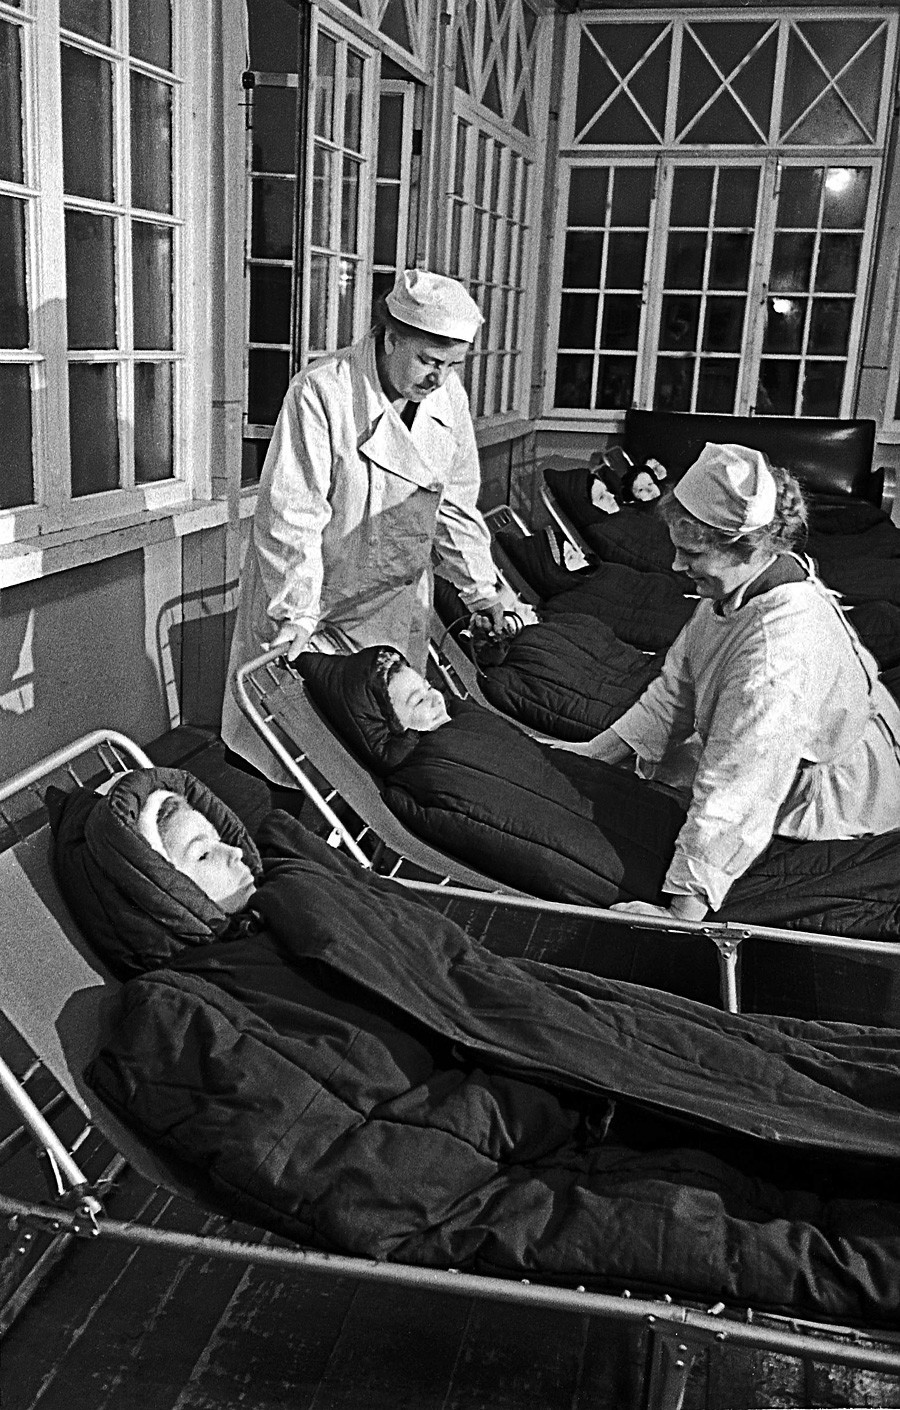 Crianças em sanatório no Istmo da Carélia, em 1959

